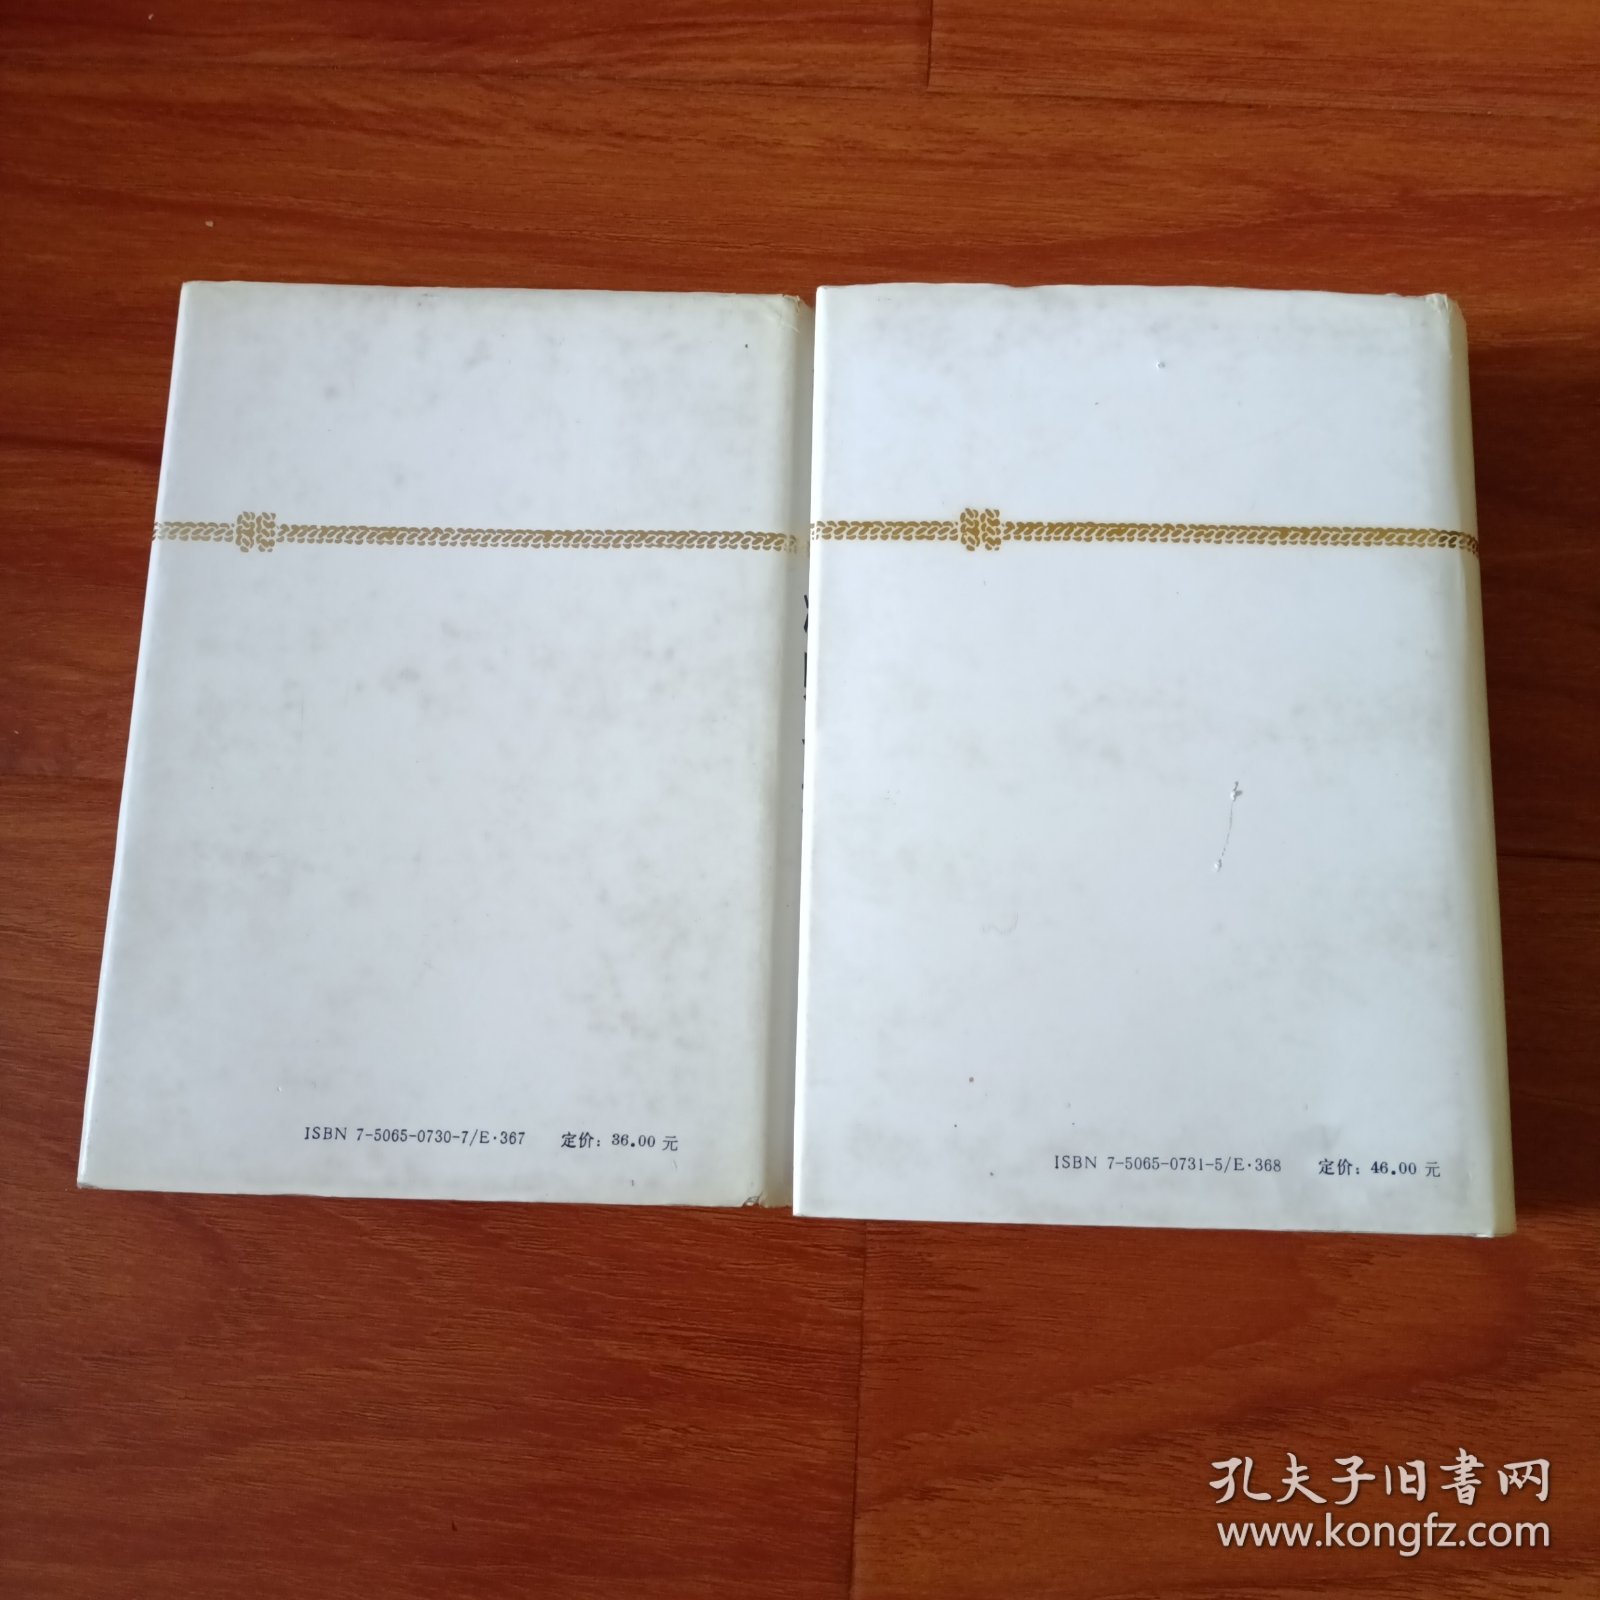 中国人民解放军将帅名录第一，二集。2册合售